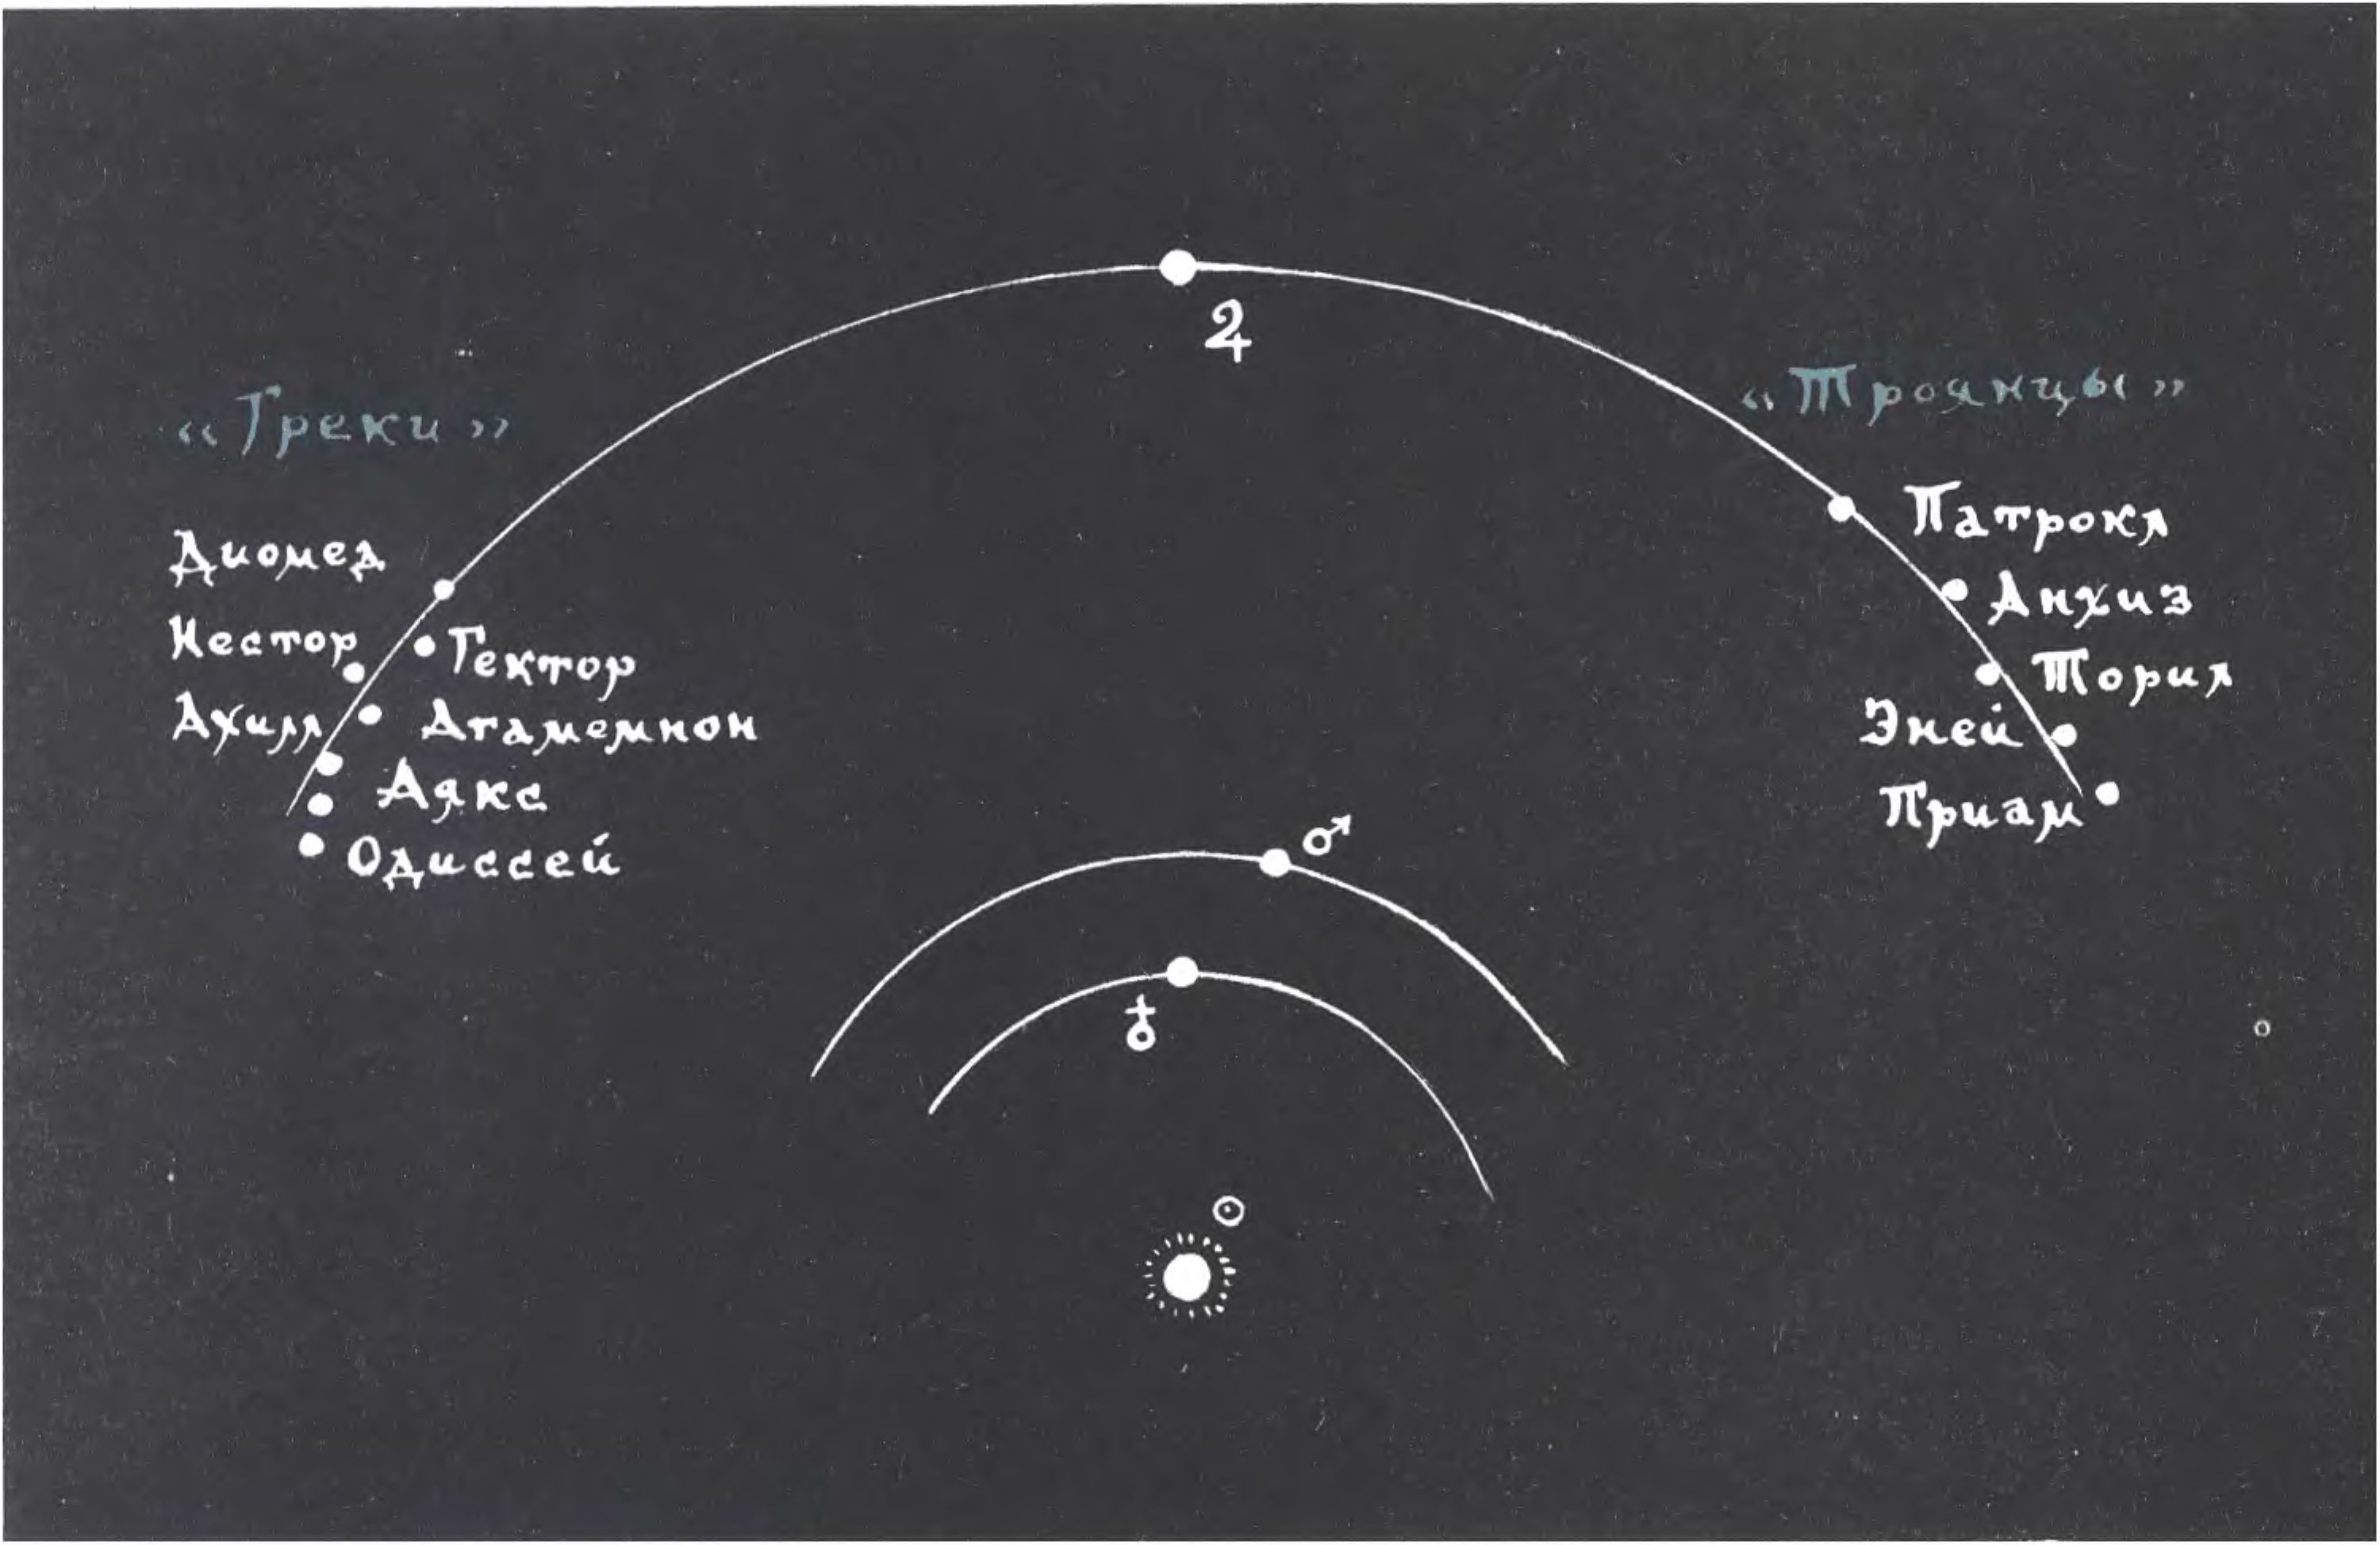 Схема расположения нейтральных зон на орбите Юпитера, куда спрятались «греки» и «троянцы» от сил притяжения Солнца и могучей планеты